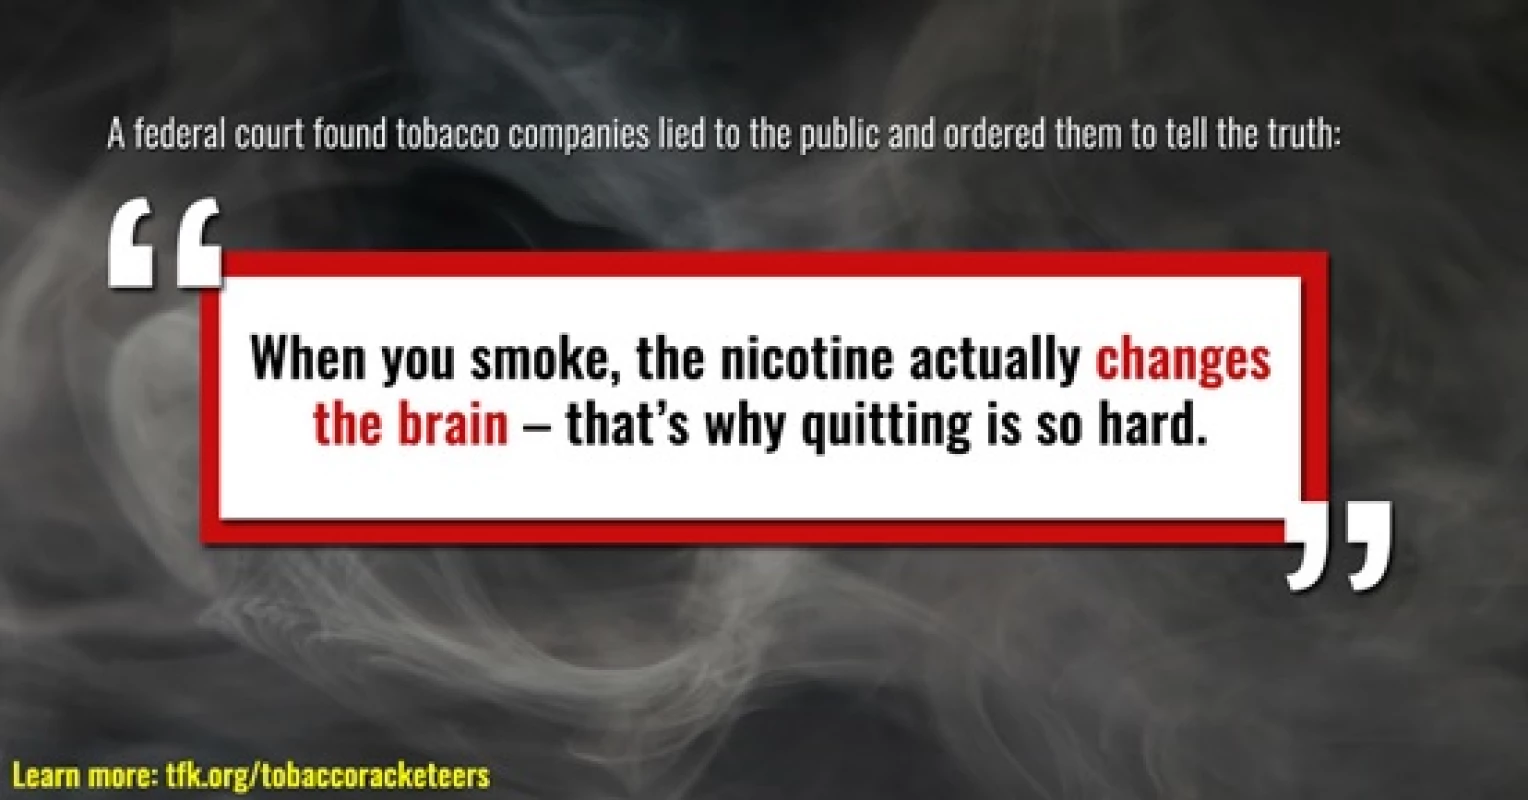 Když kouříte, nikotin skutečně mění váš mozek – proto je tak těžké přestat kouřit
(&lt;a href=&quot;https://www.tobaccofreekids.org/&quot;&gt;www.tobaccofreekids.org&lt;/a&gt;)